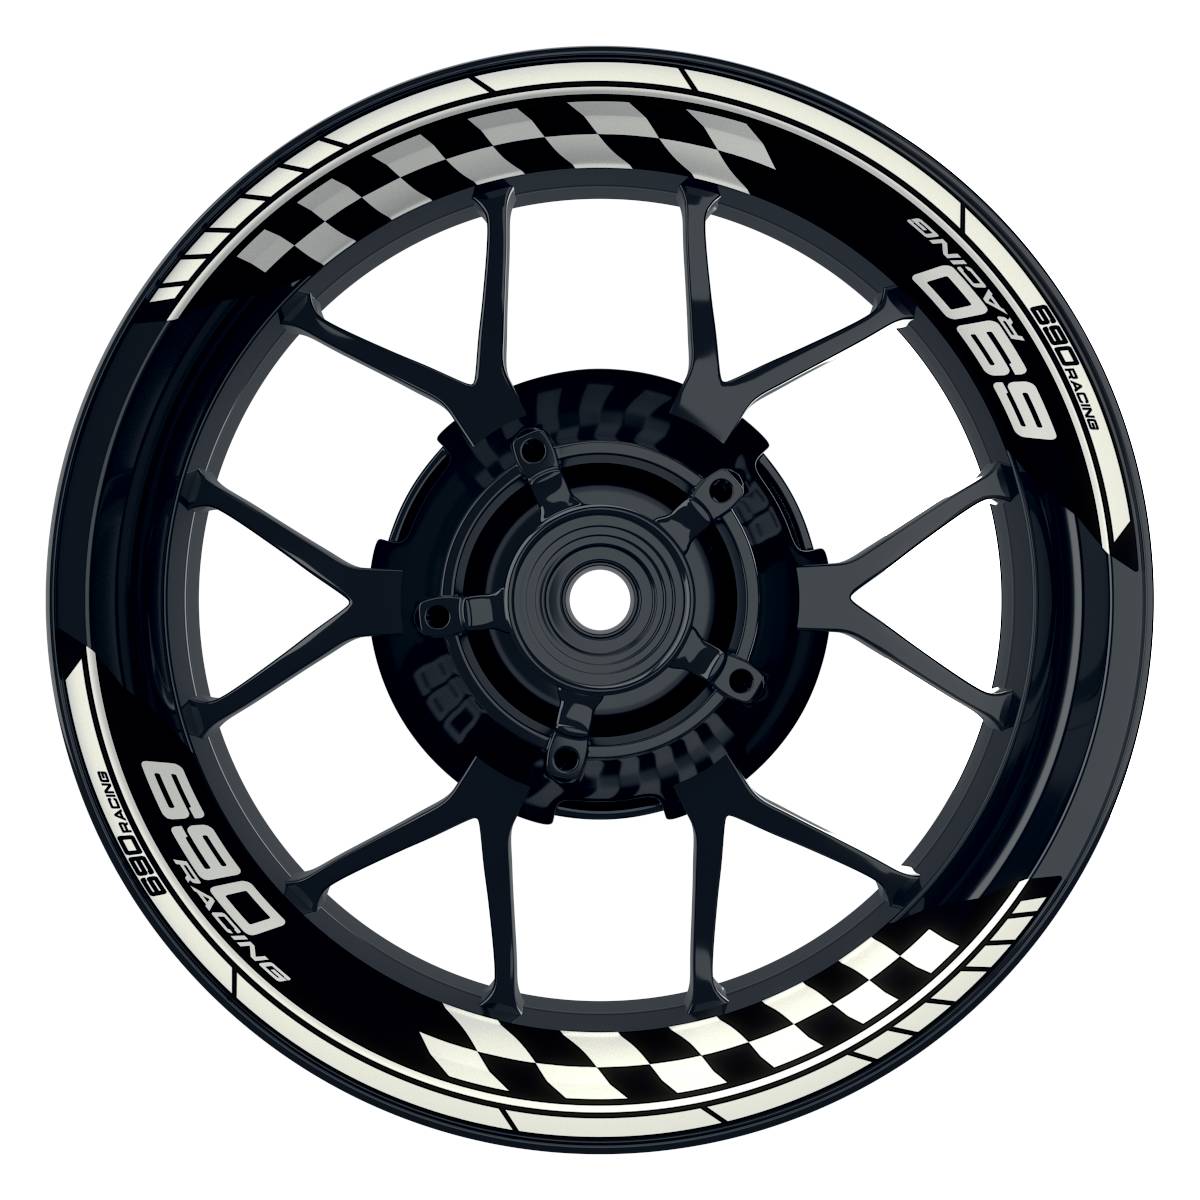 KTM Racing 690 Grid schwarz weiss Frontansicht